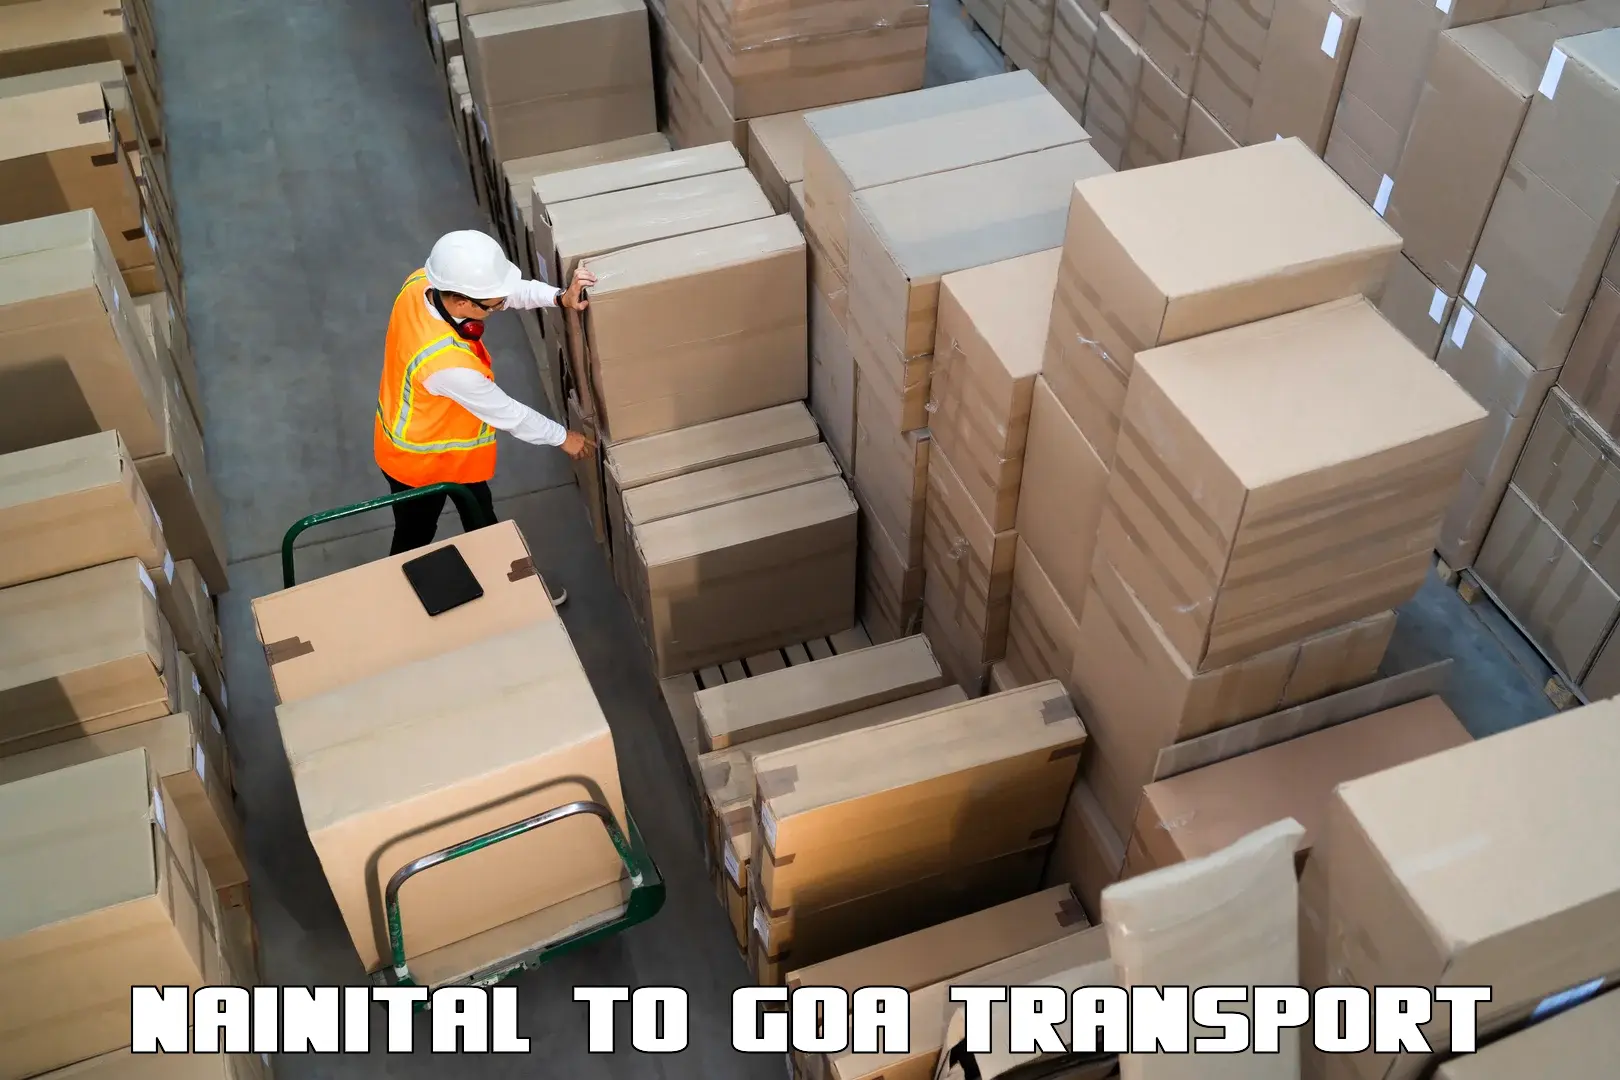 Lorry transport service Nainital to Goa University